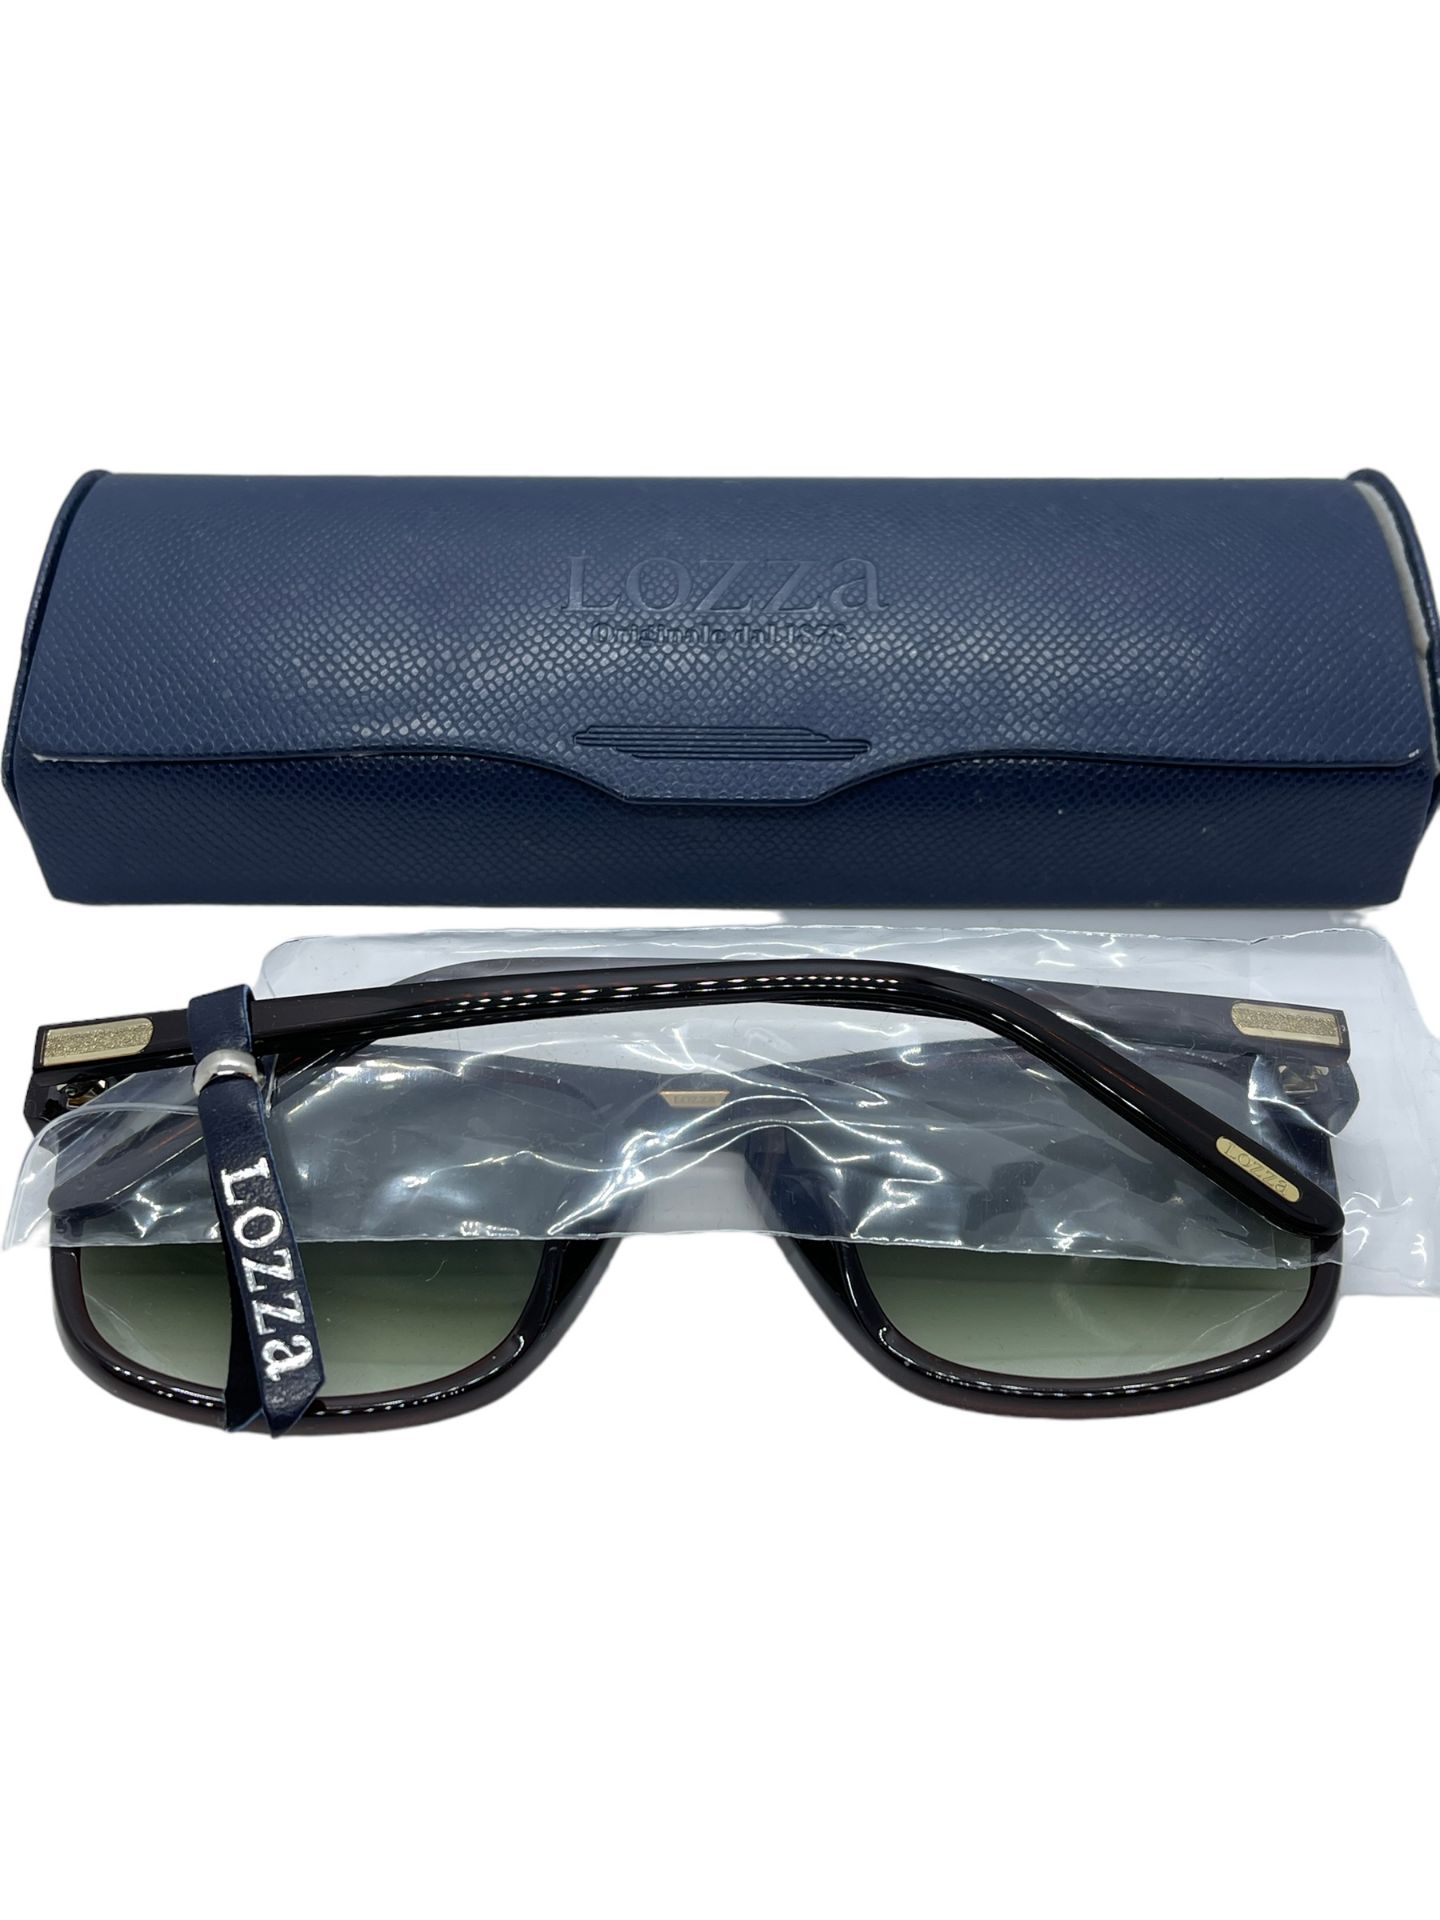 Lozza men's sunglasses boxed brand new - Image 3 of 4